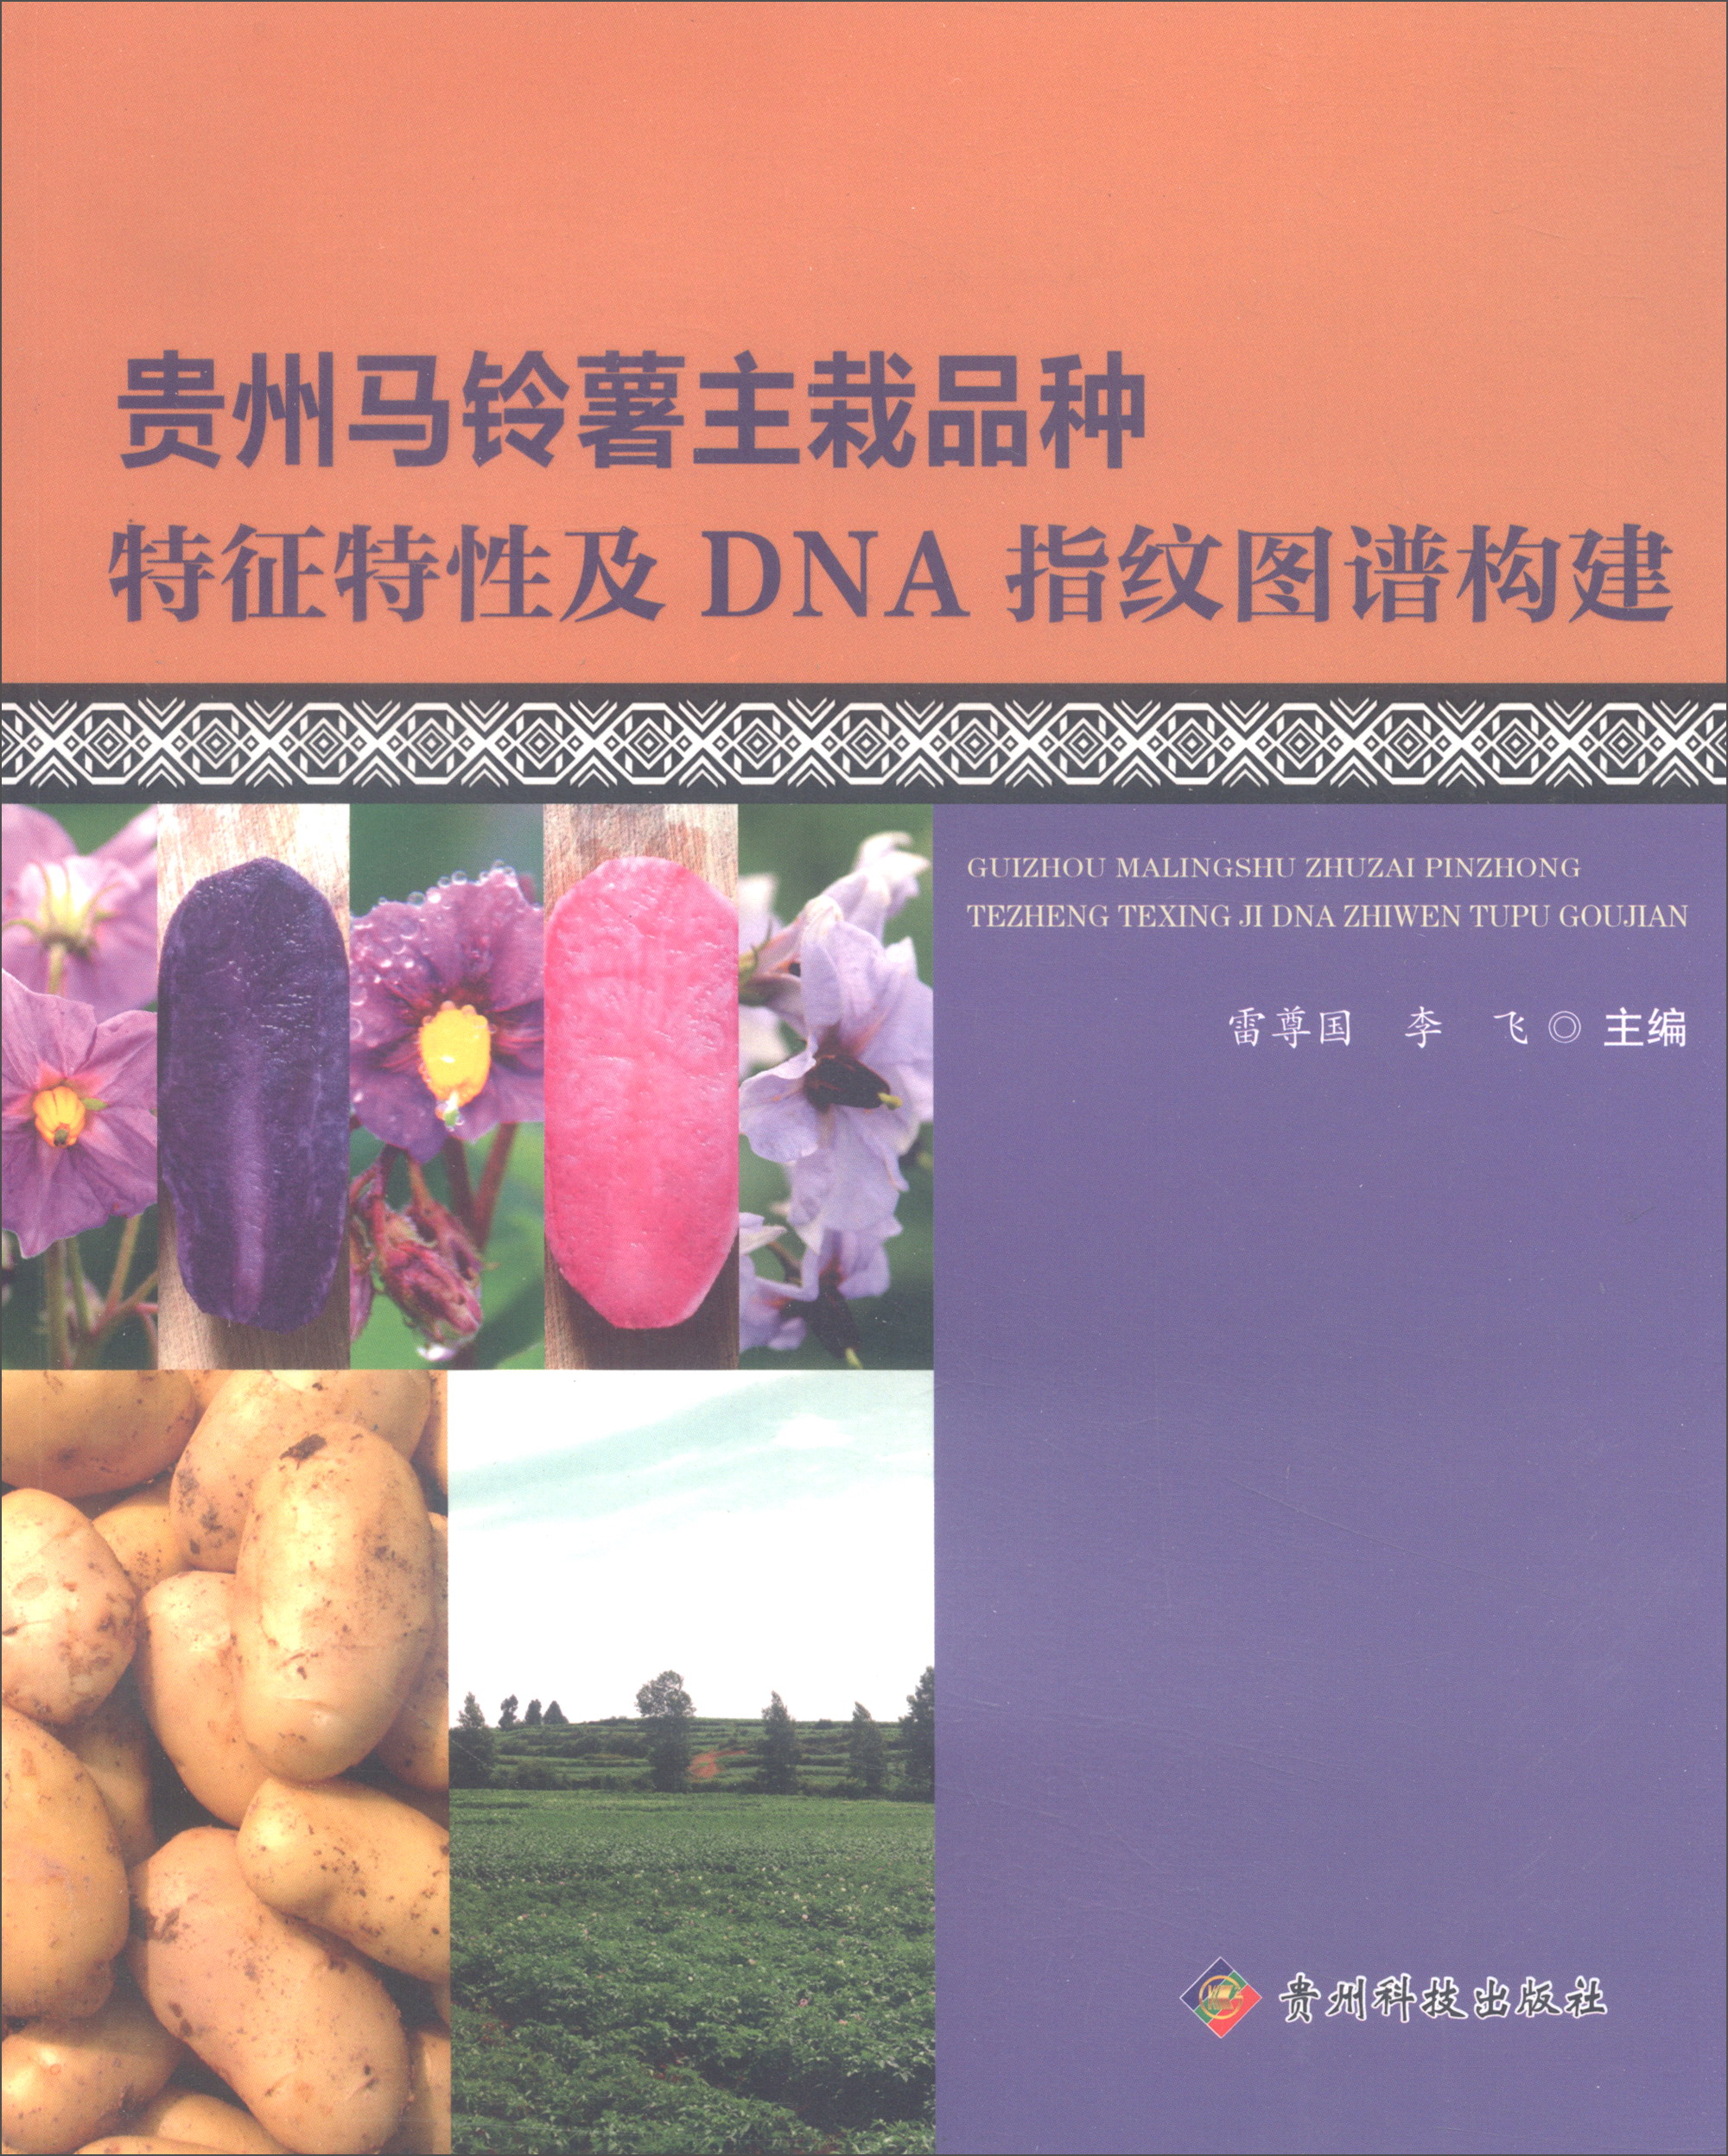 贵州马铃薯主栽品种特征特性及DNA指纹图谱构建 pdf格式下载